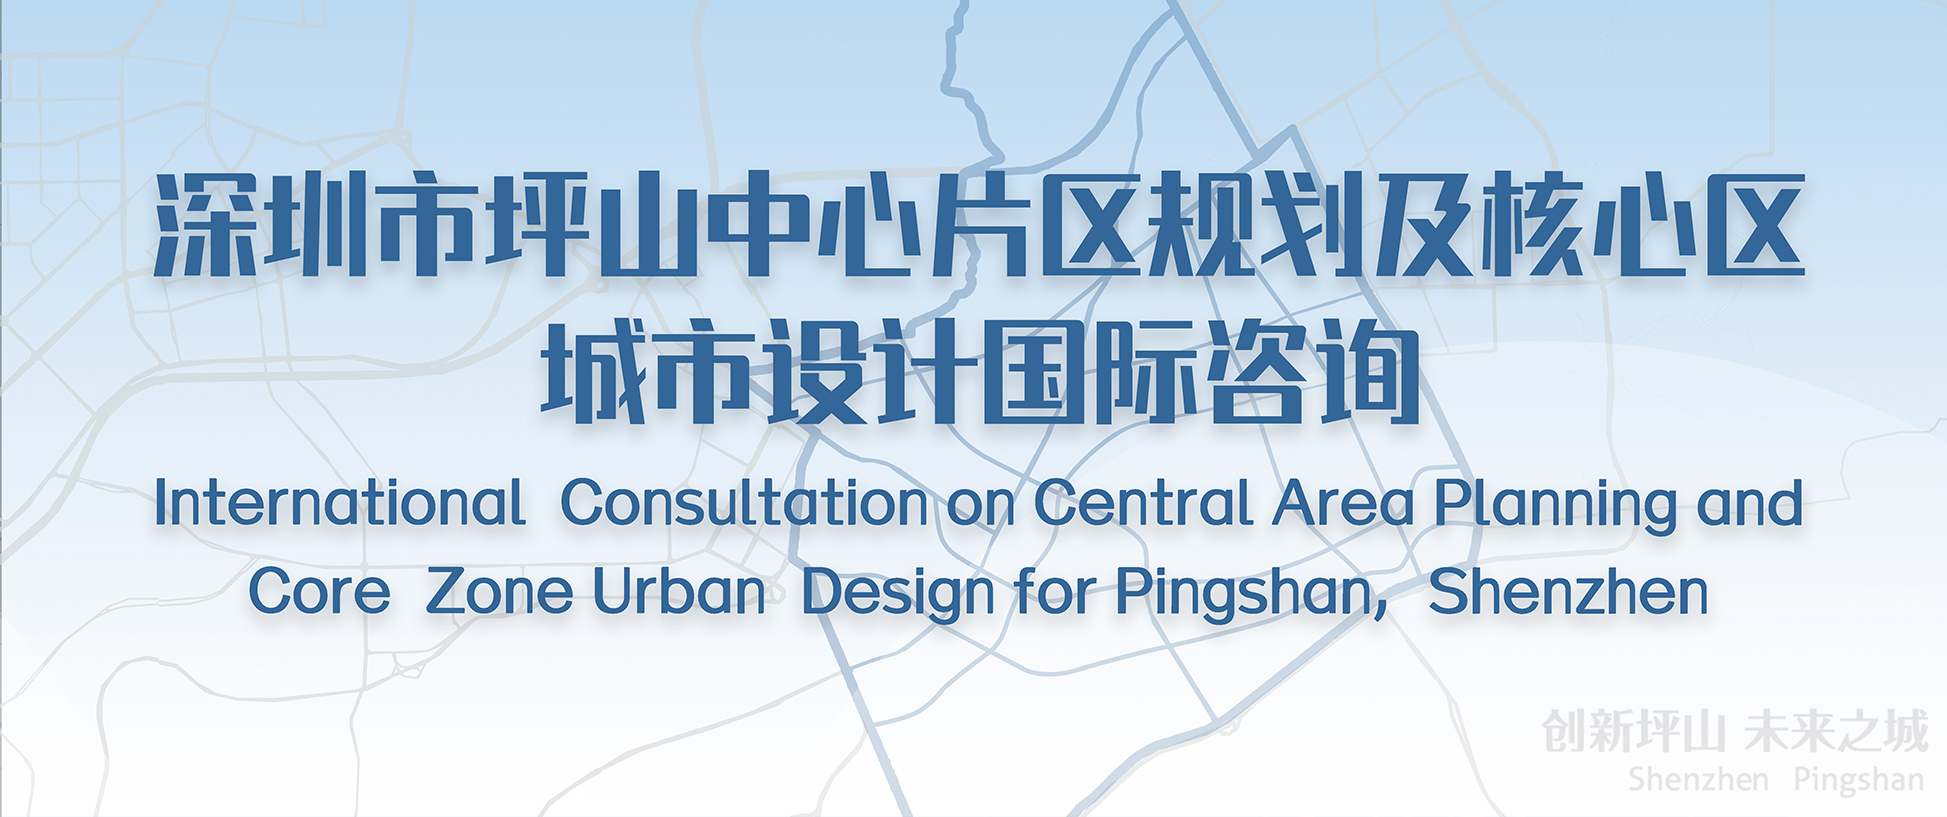 正式公告丨深圳市坪山中心片区规划及核心区城市设计国际咨询